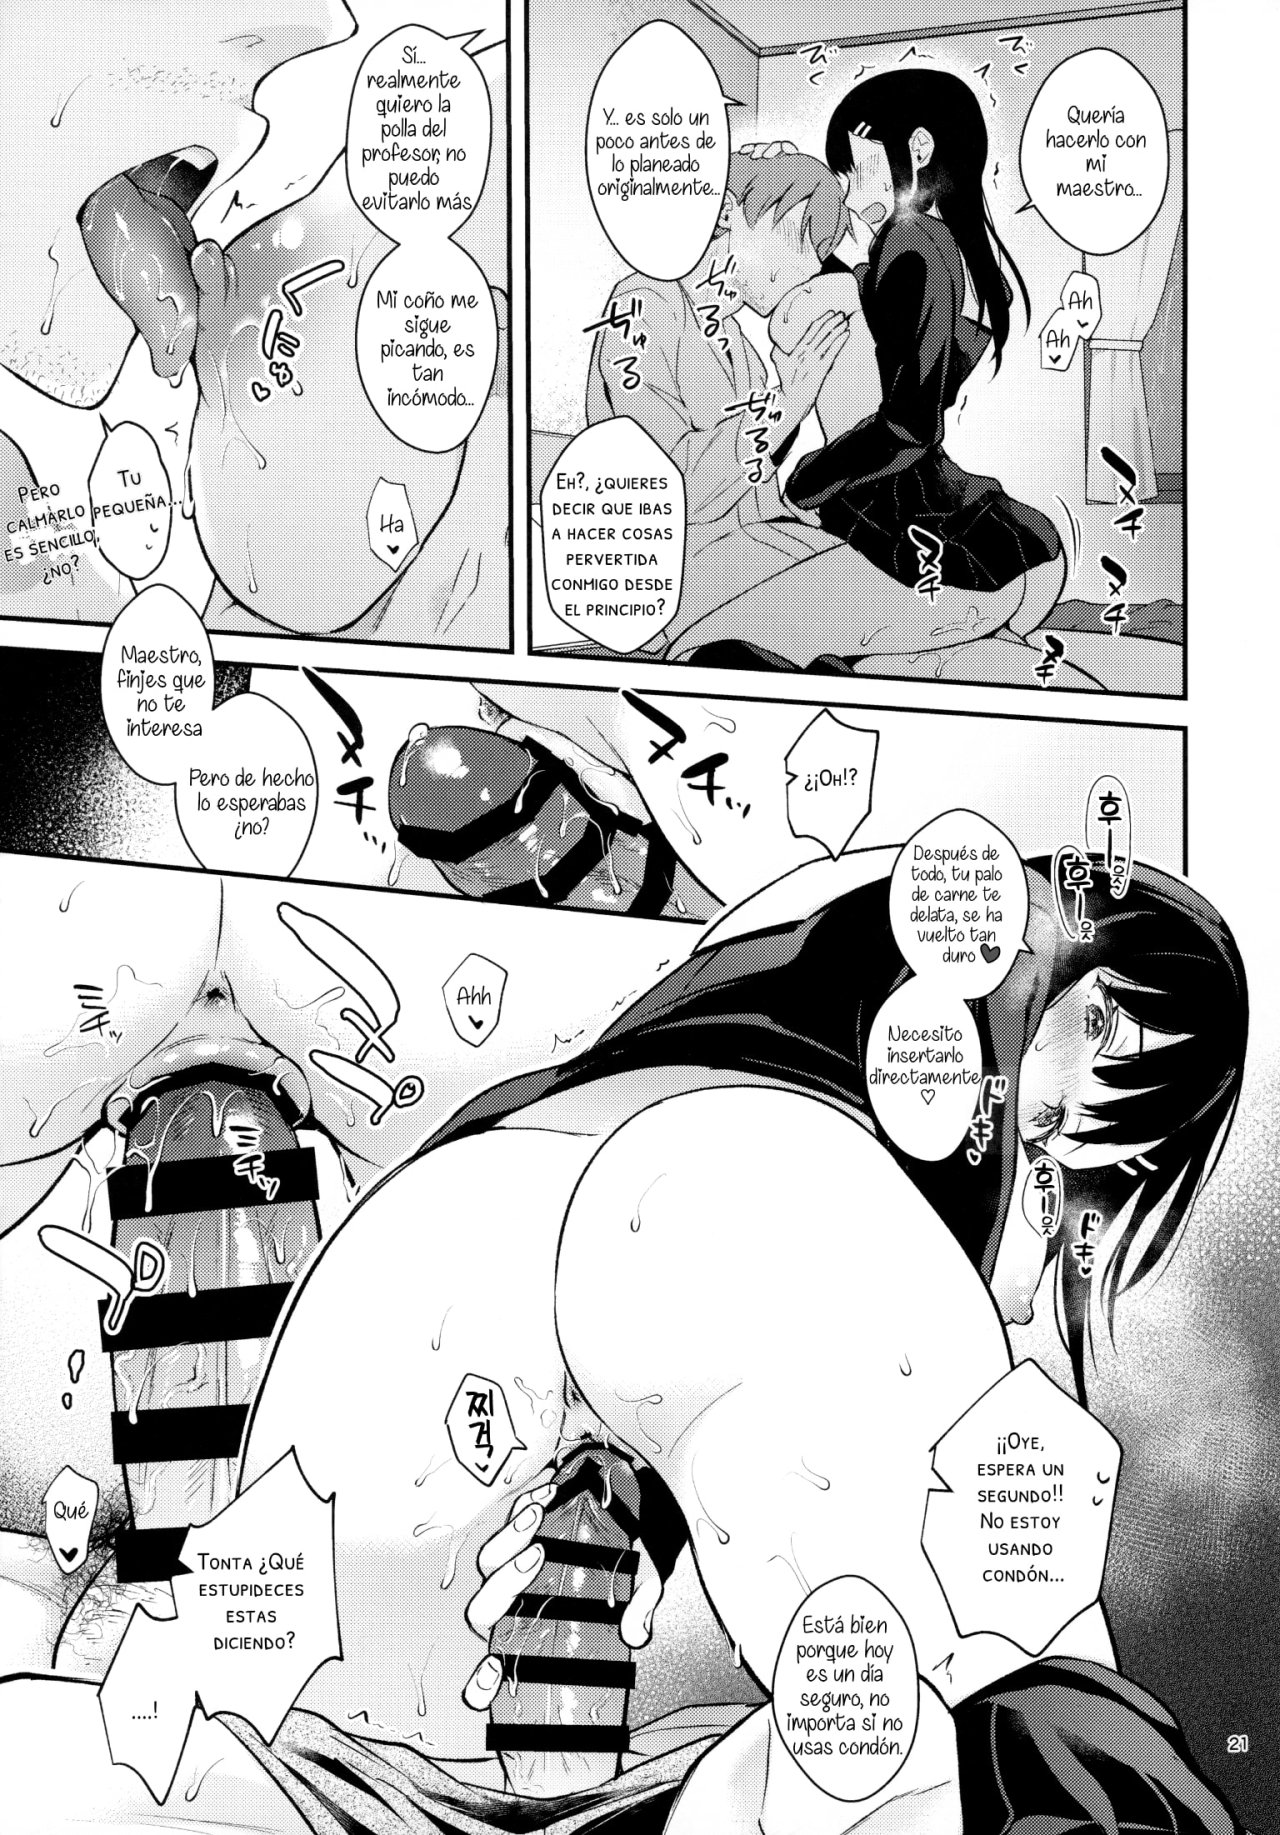 Sunshower-JK Miyako no Valentine Manga 3 - 19